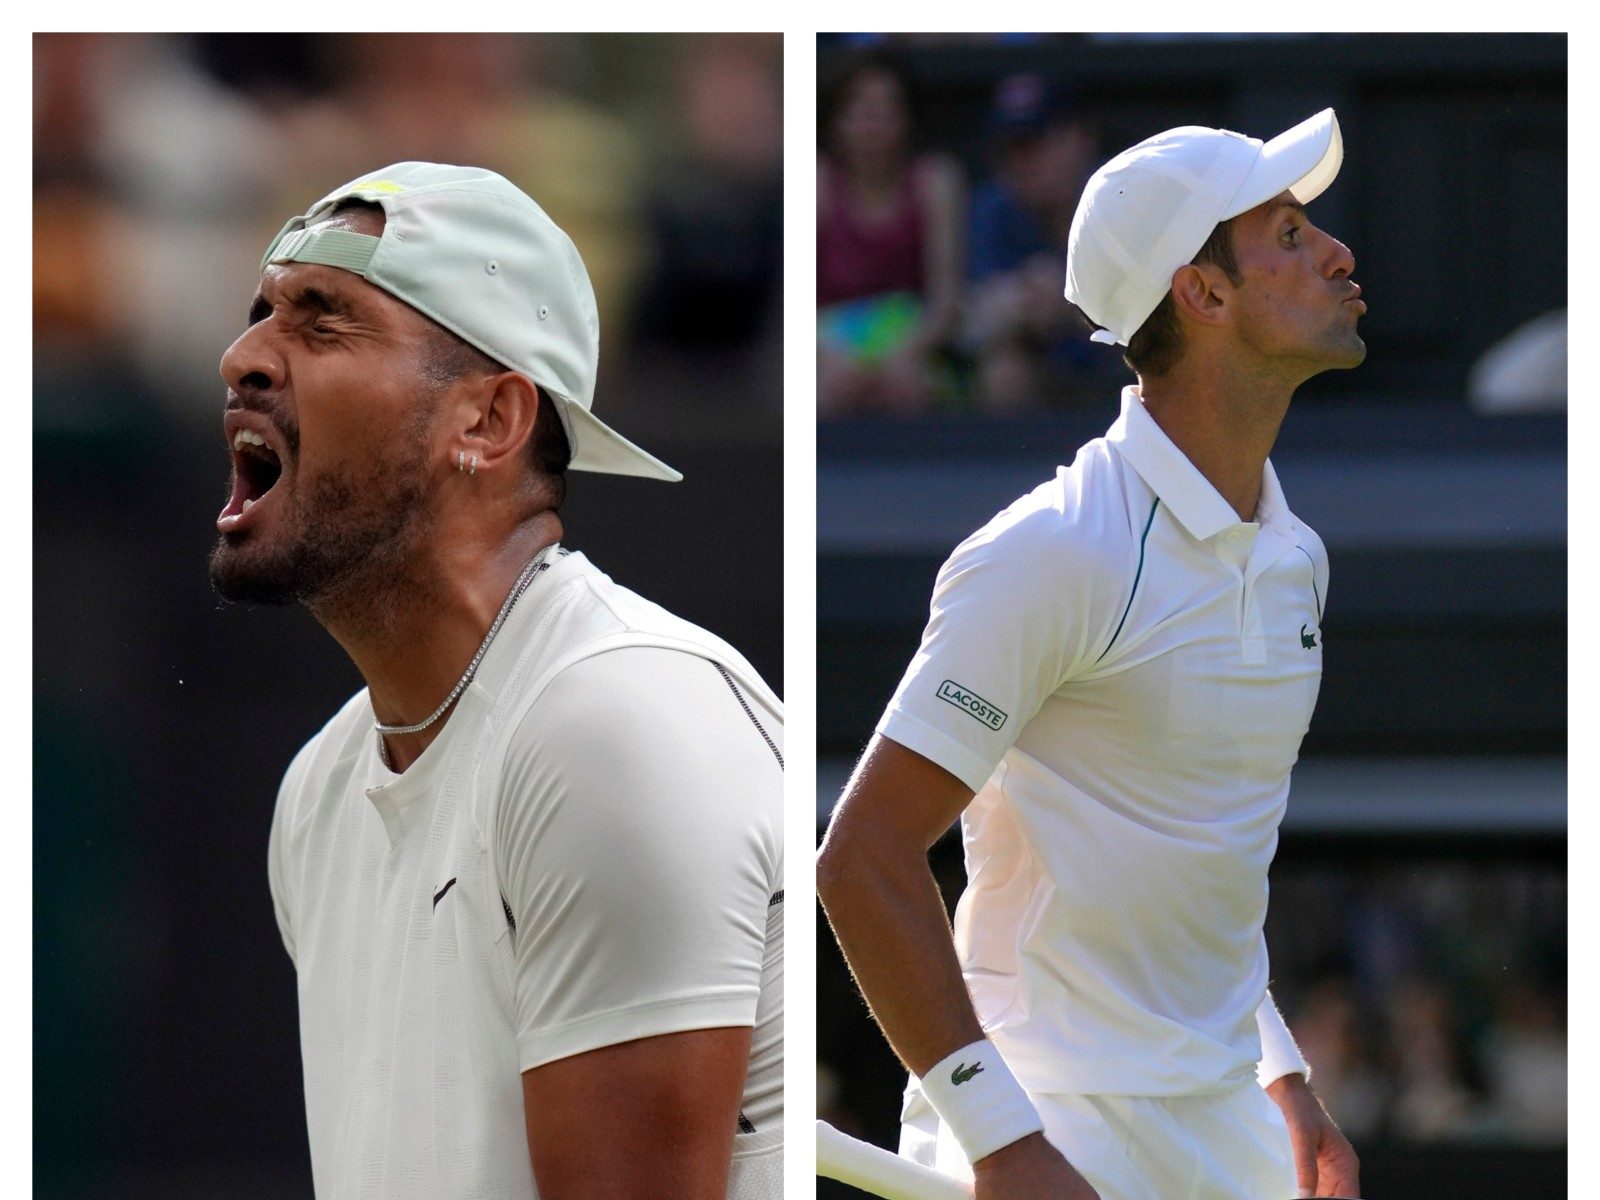 Wimbledon 2022 Date With Destiny as Nick Kyrgios Faces Novak Djokovic in Final